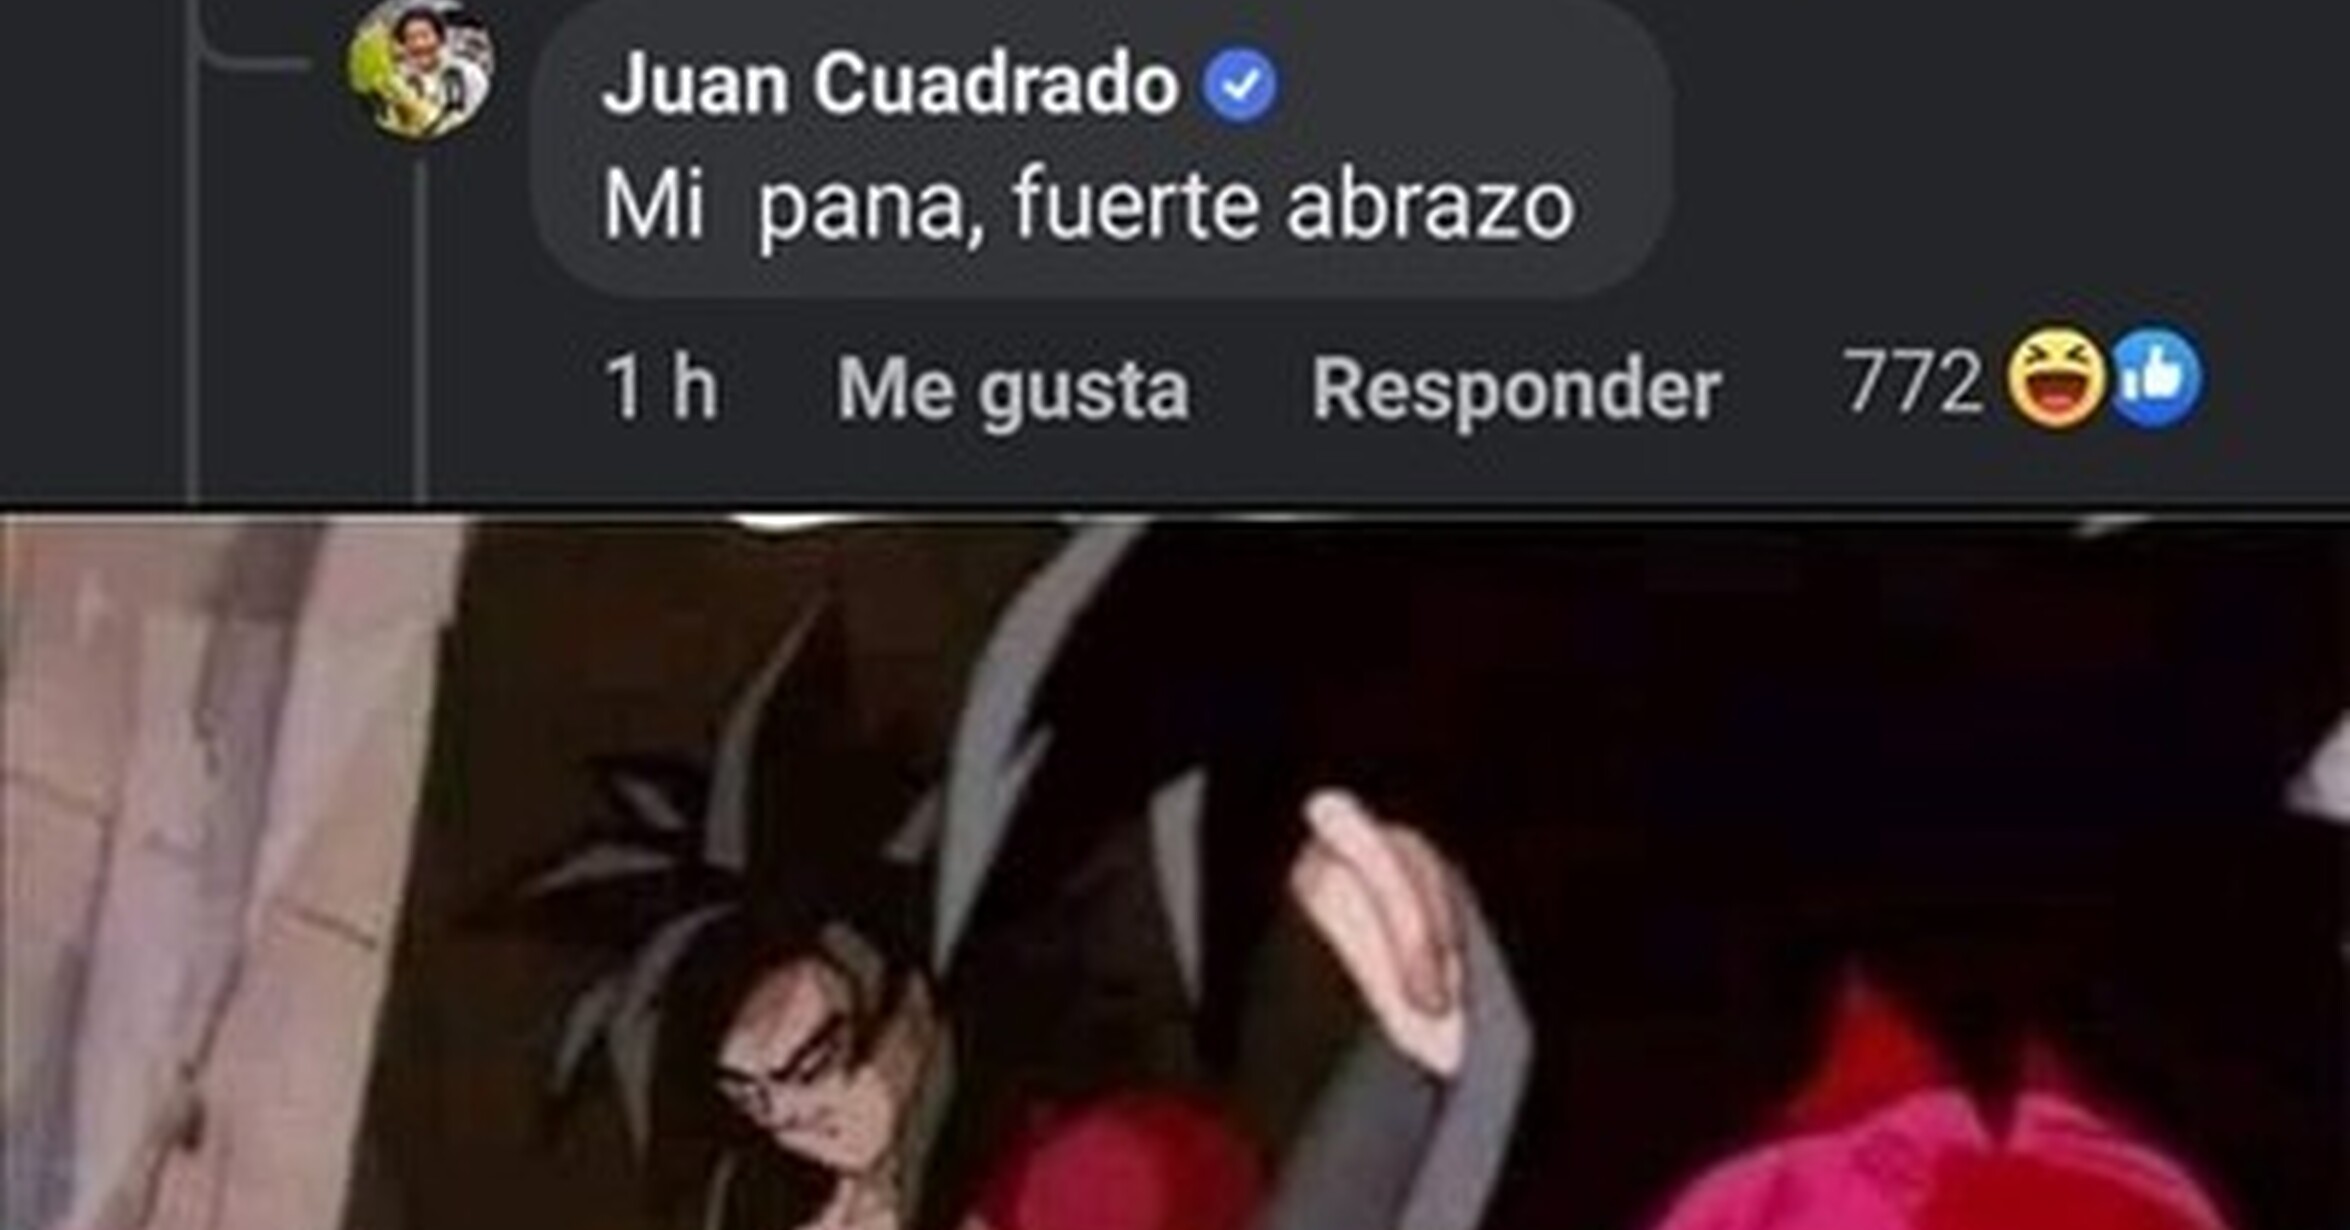 Tas bien, Juan?